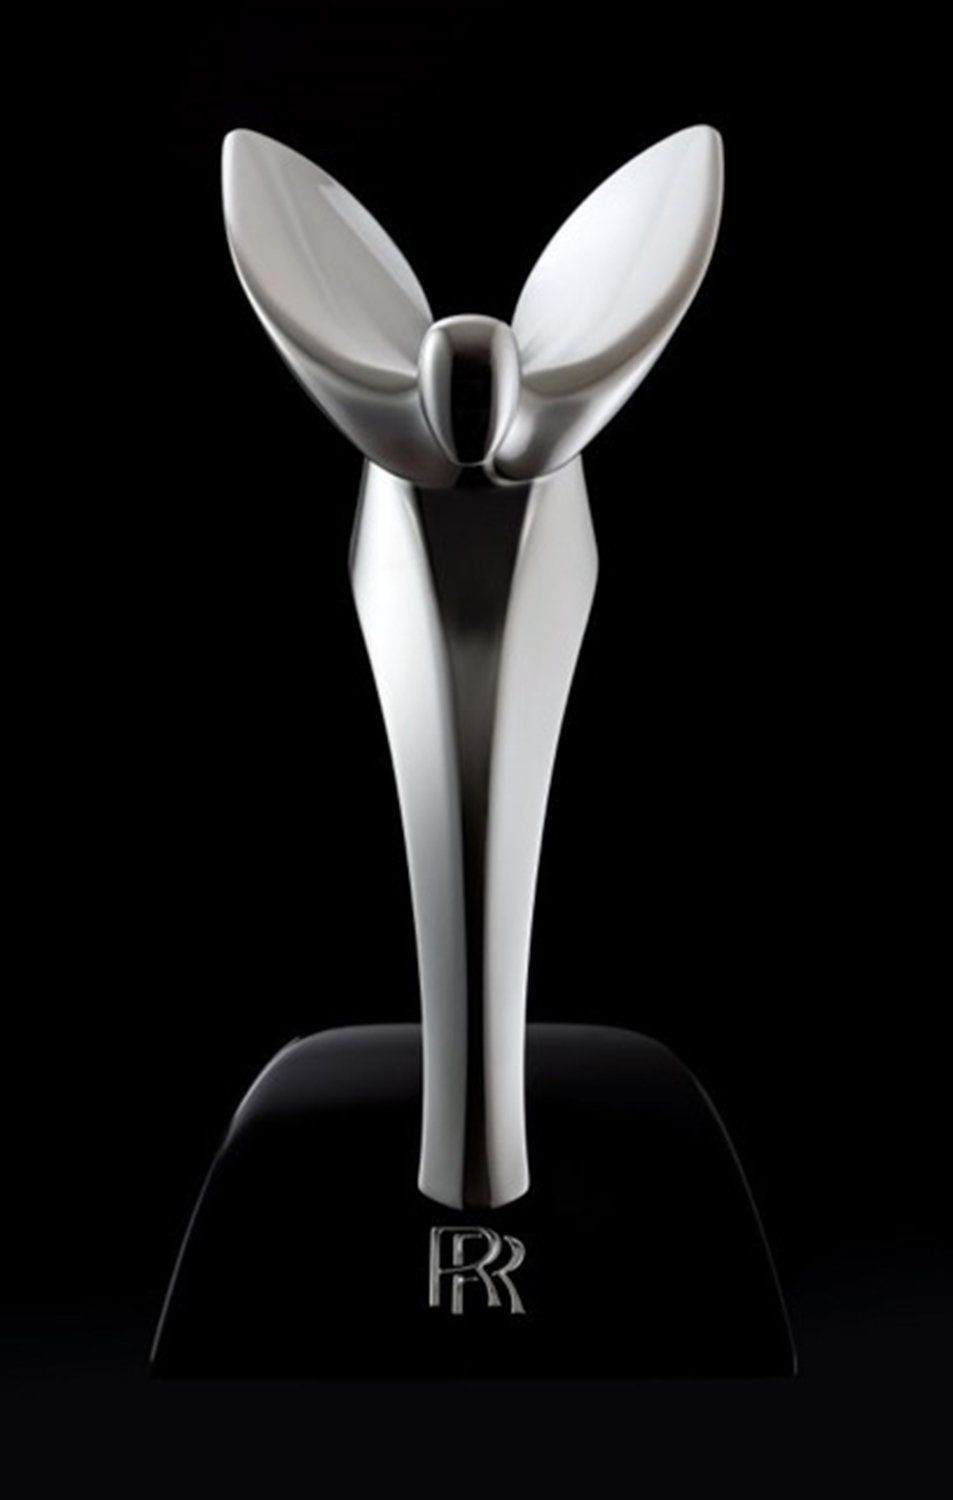 Rolls-Royce Motor Cars Prague získalo prestižní ocenění „Nejlepší dealer" v kategorii servis a poprodení služby